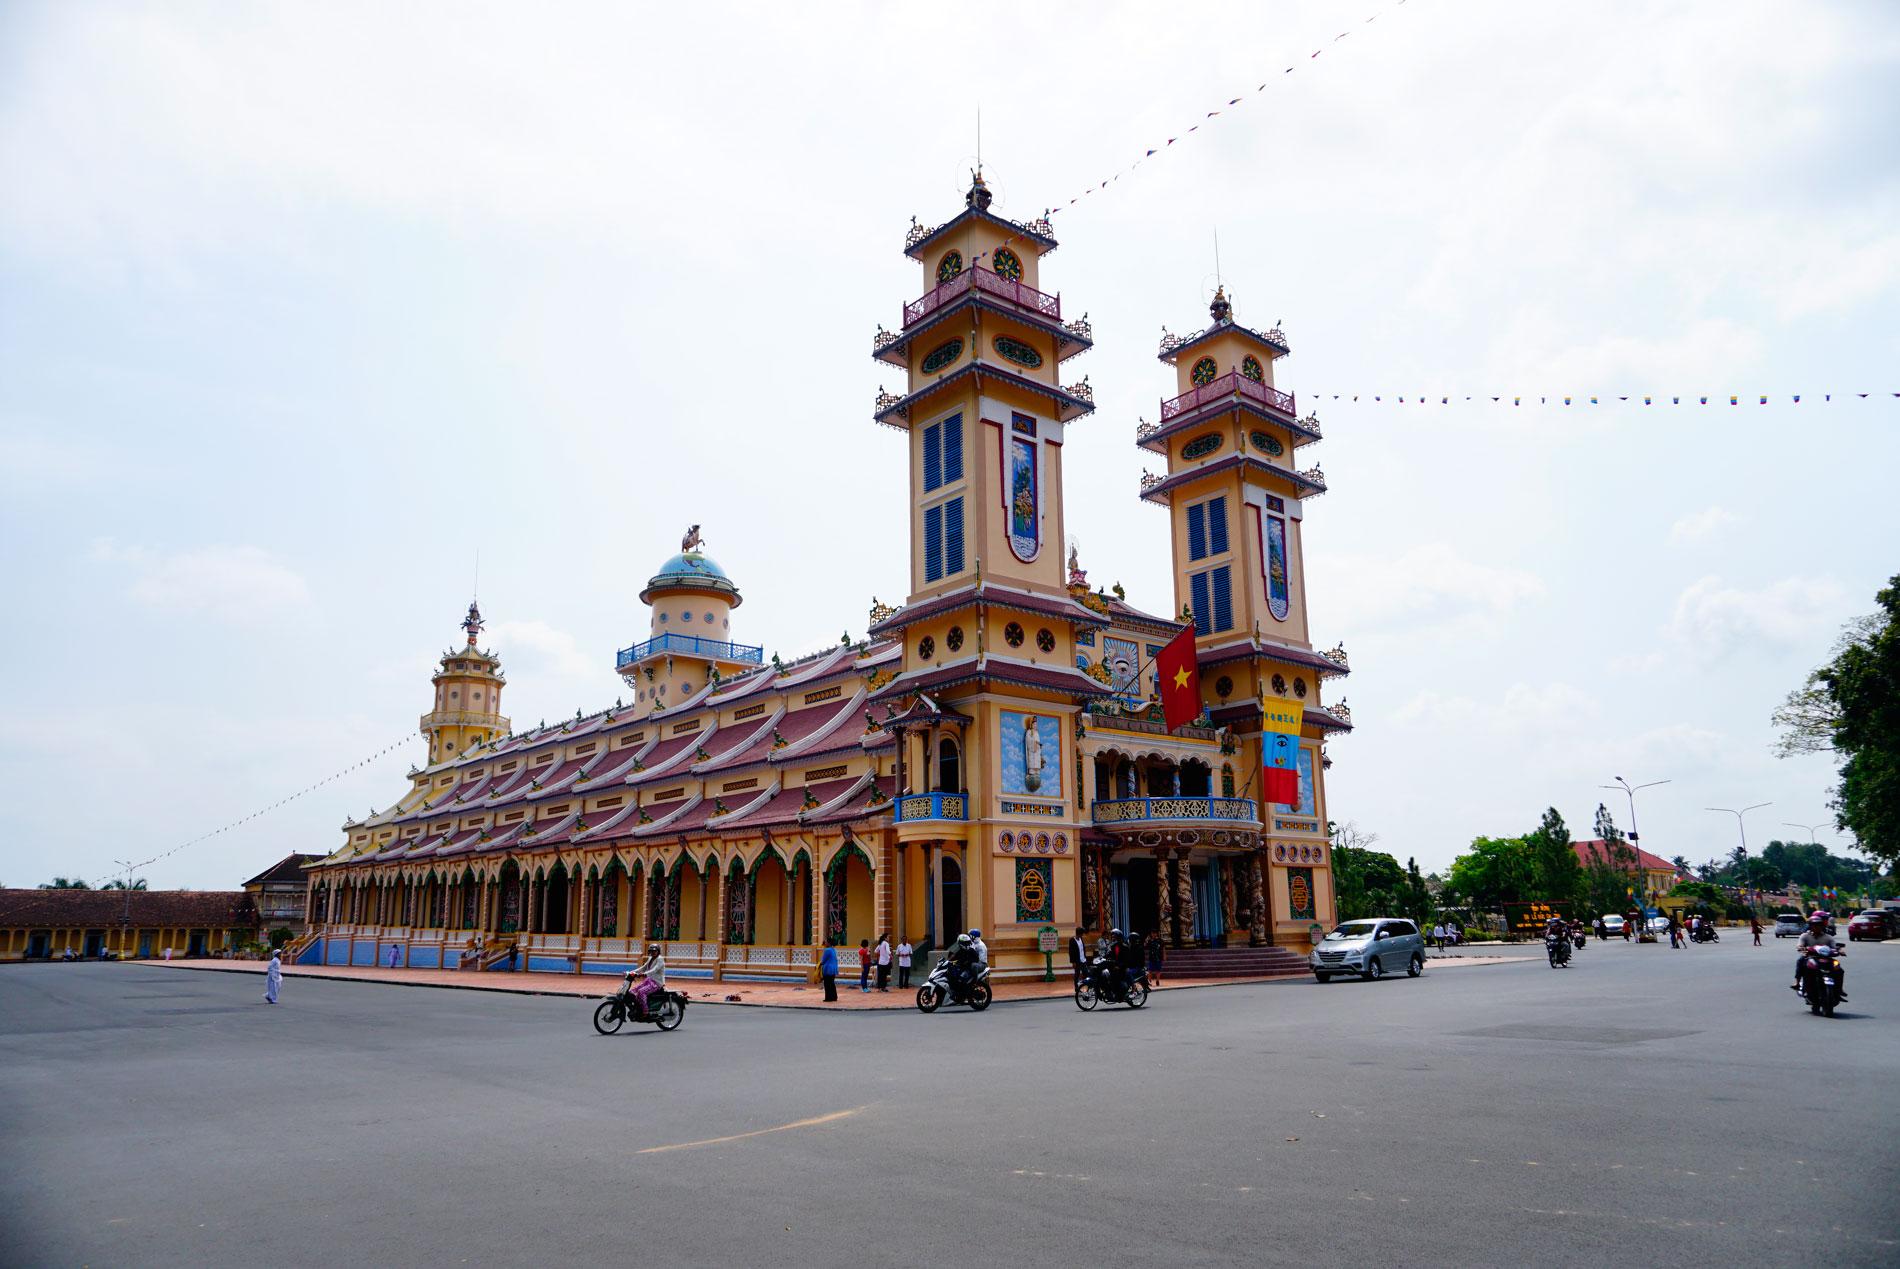 Ngày 17/02/2018, Tour du lịch PN Travel quyết định khám phá Tòa Thánh cốt tre nổi tiếng thế giới ở Tây Ninh.